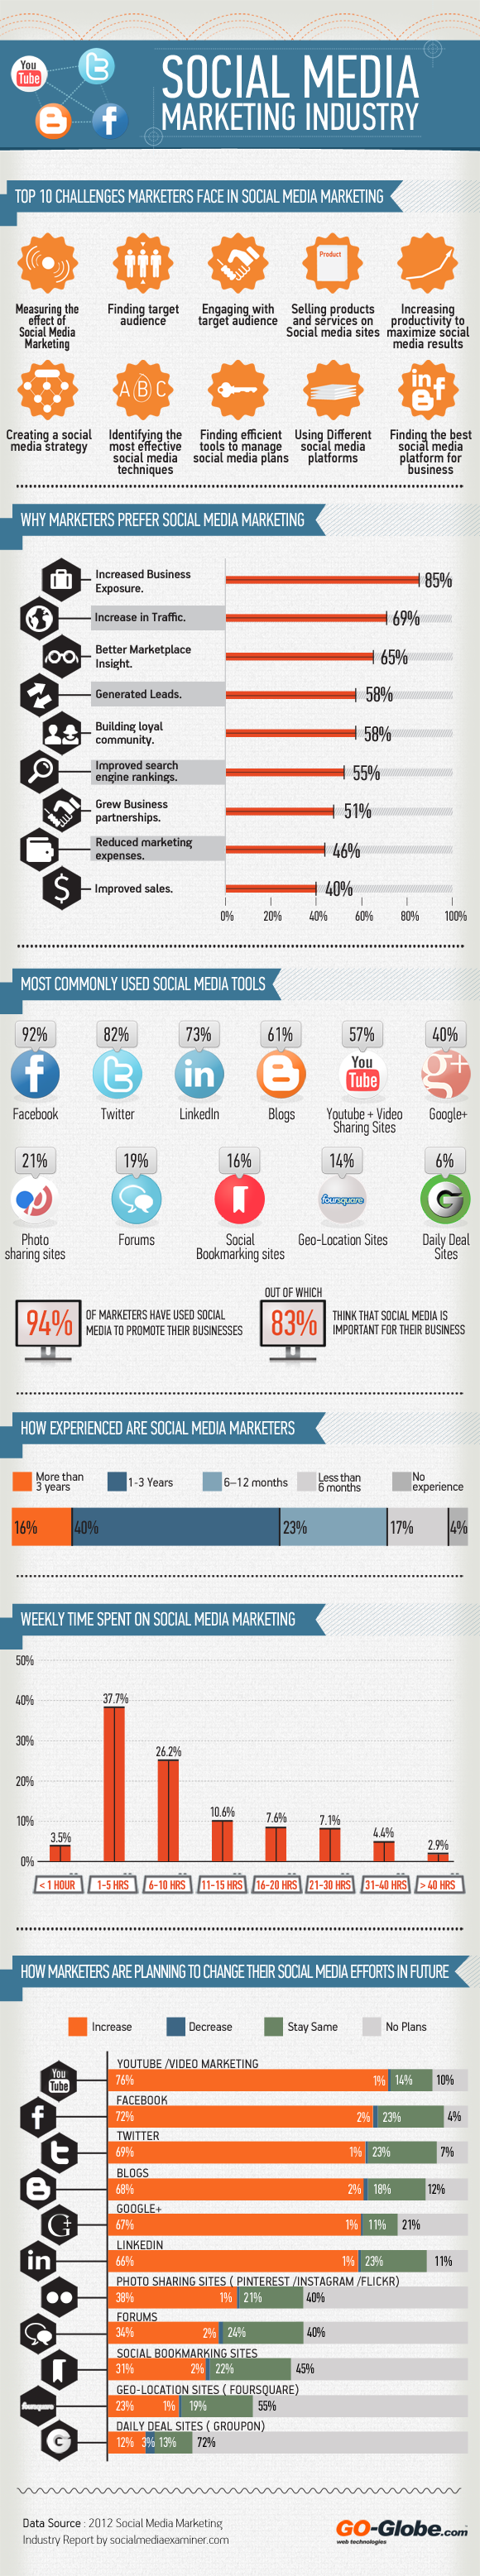 Social Media Marketing Industry